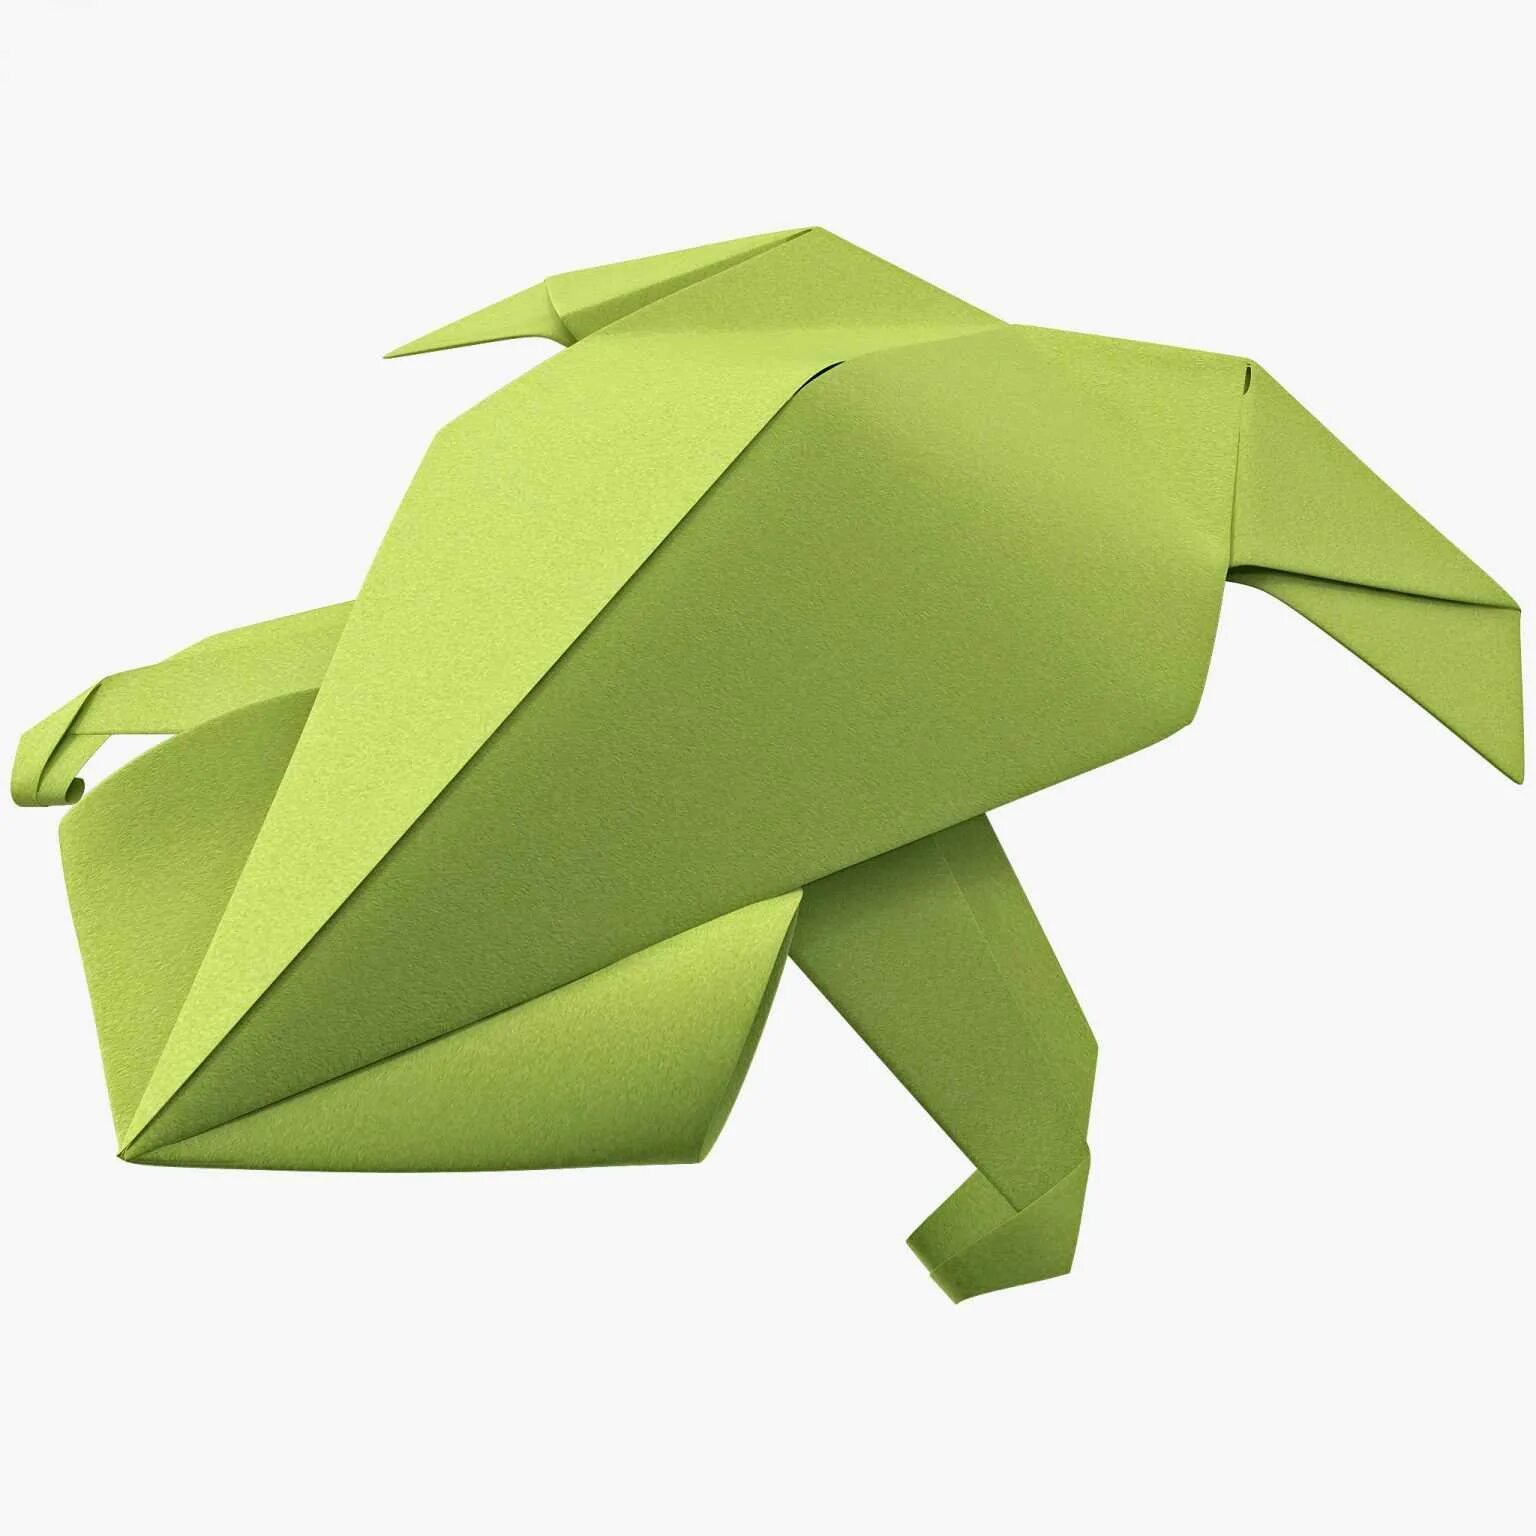 Оригами лягушка. Объемная лягушка из бумаги. Оригами жаба. Оригами квакушка.